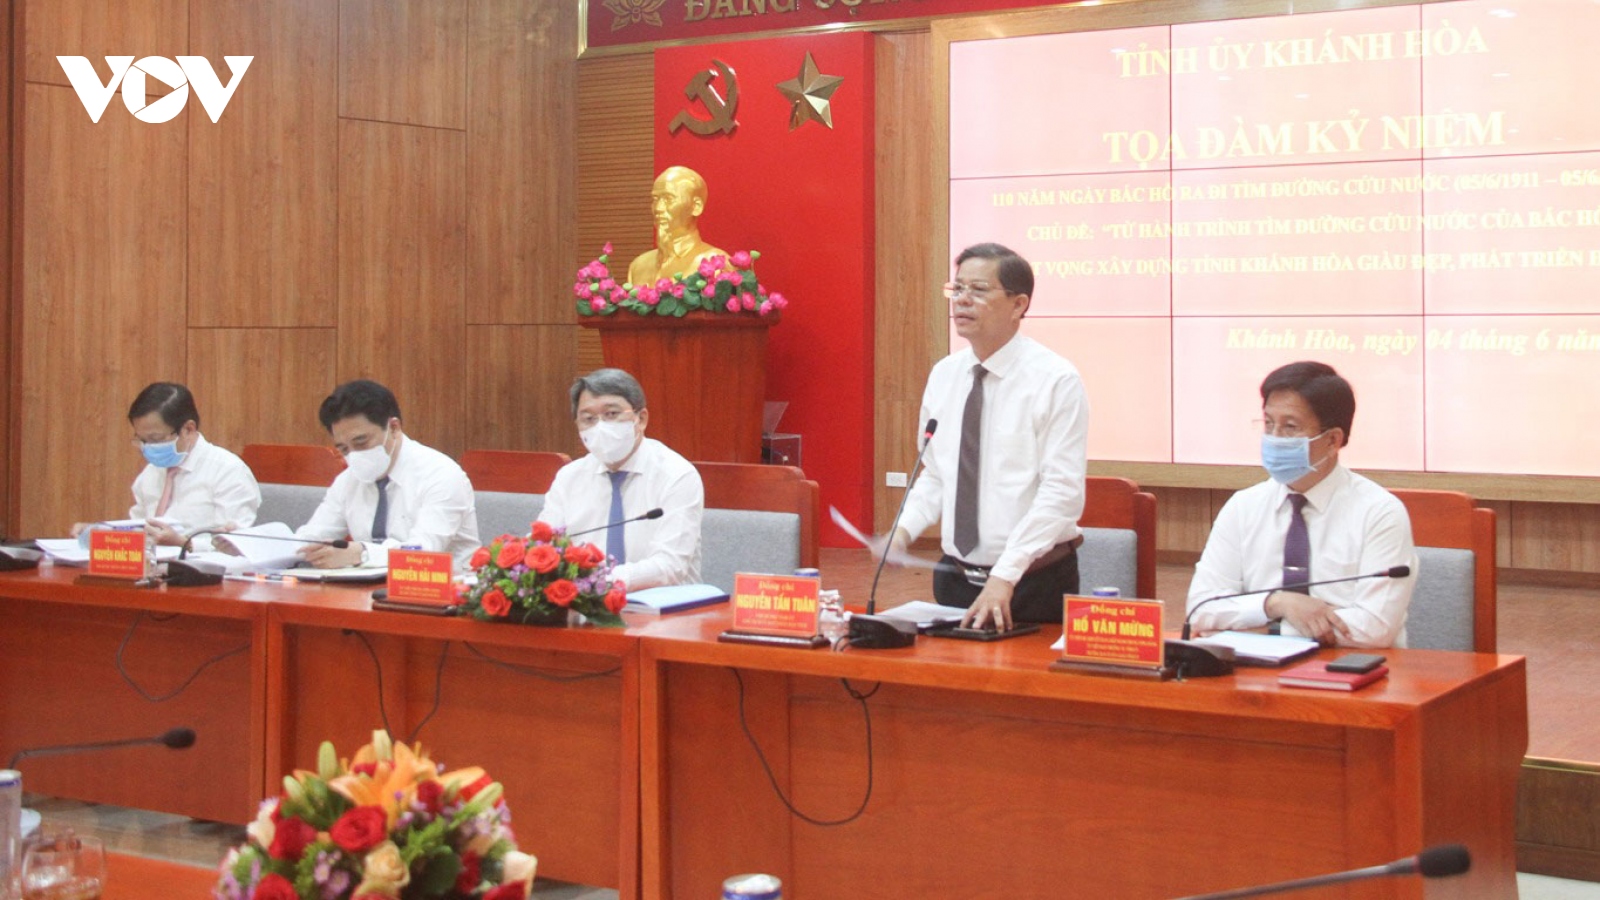 Tỉnh ủy Khánh Hòa tọa đàm nhân kỷ niệm 110 năm ngày Bác Hồ ra đi tìm đường cứu nước